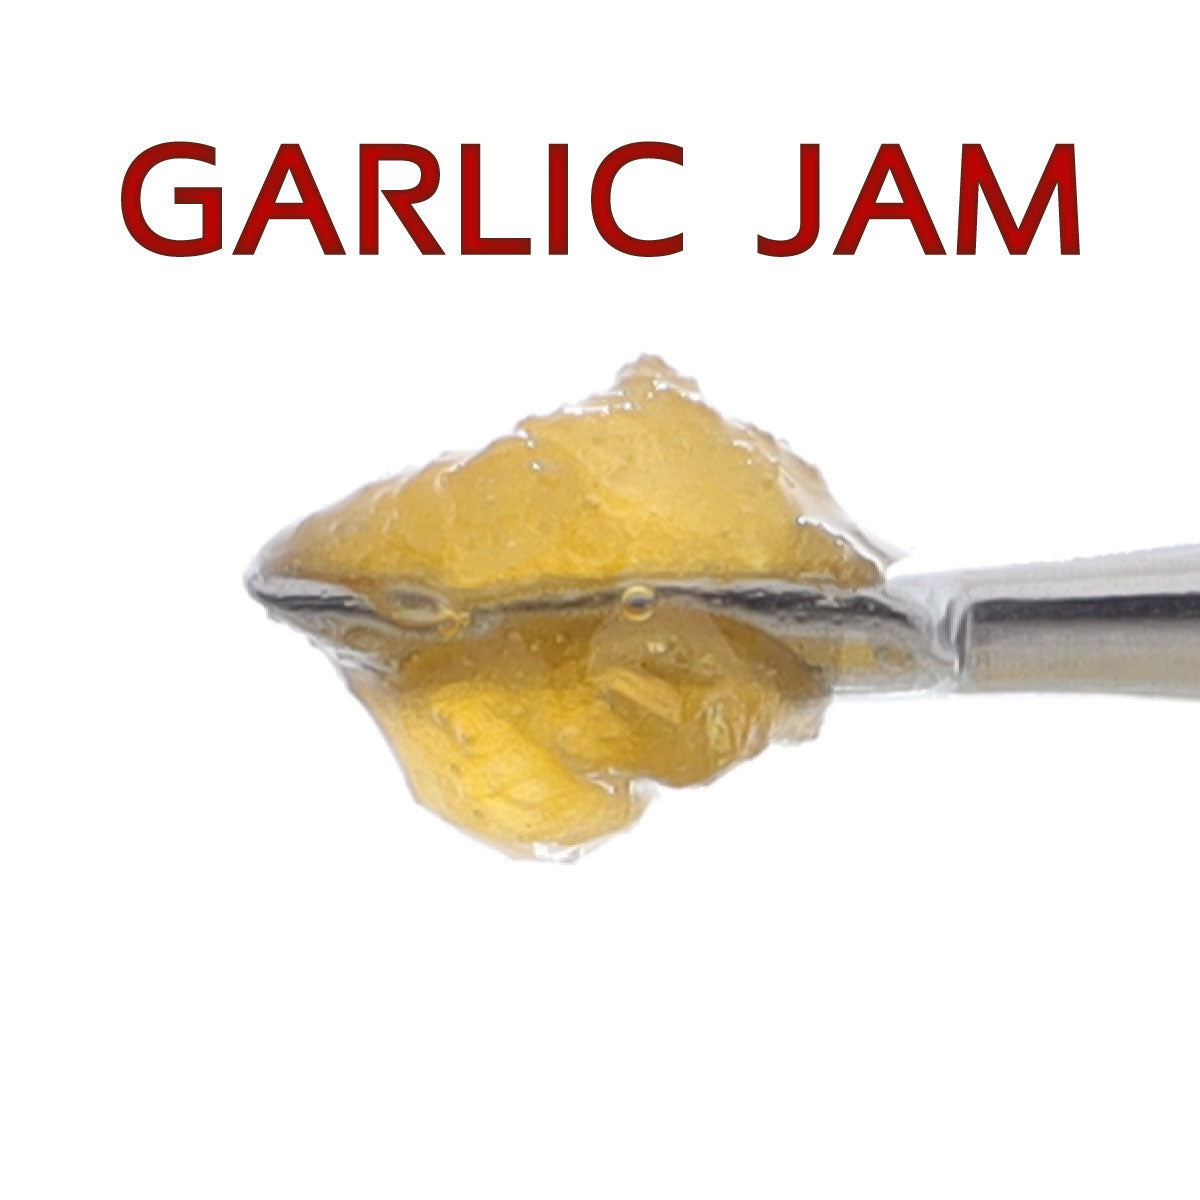 Garlic Jam Mixed Live Resin Diamonds Up Close